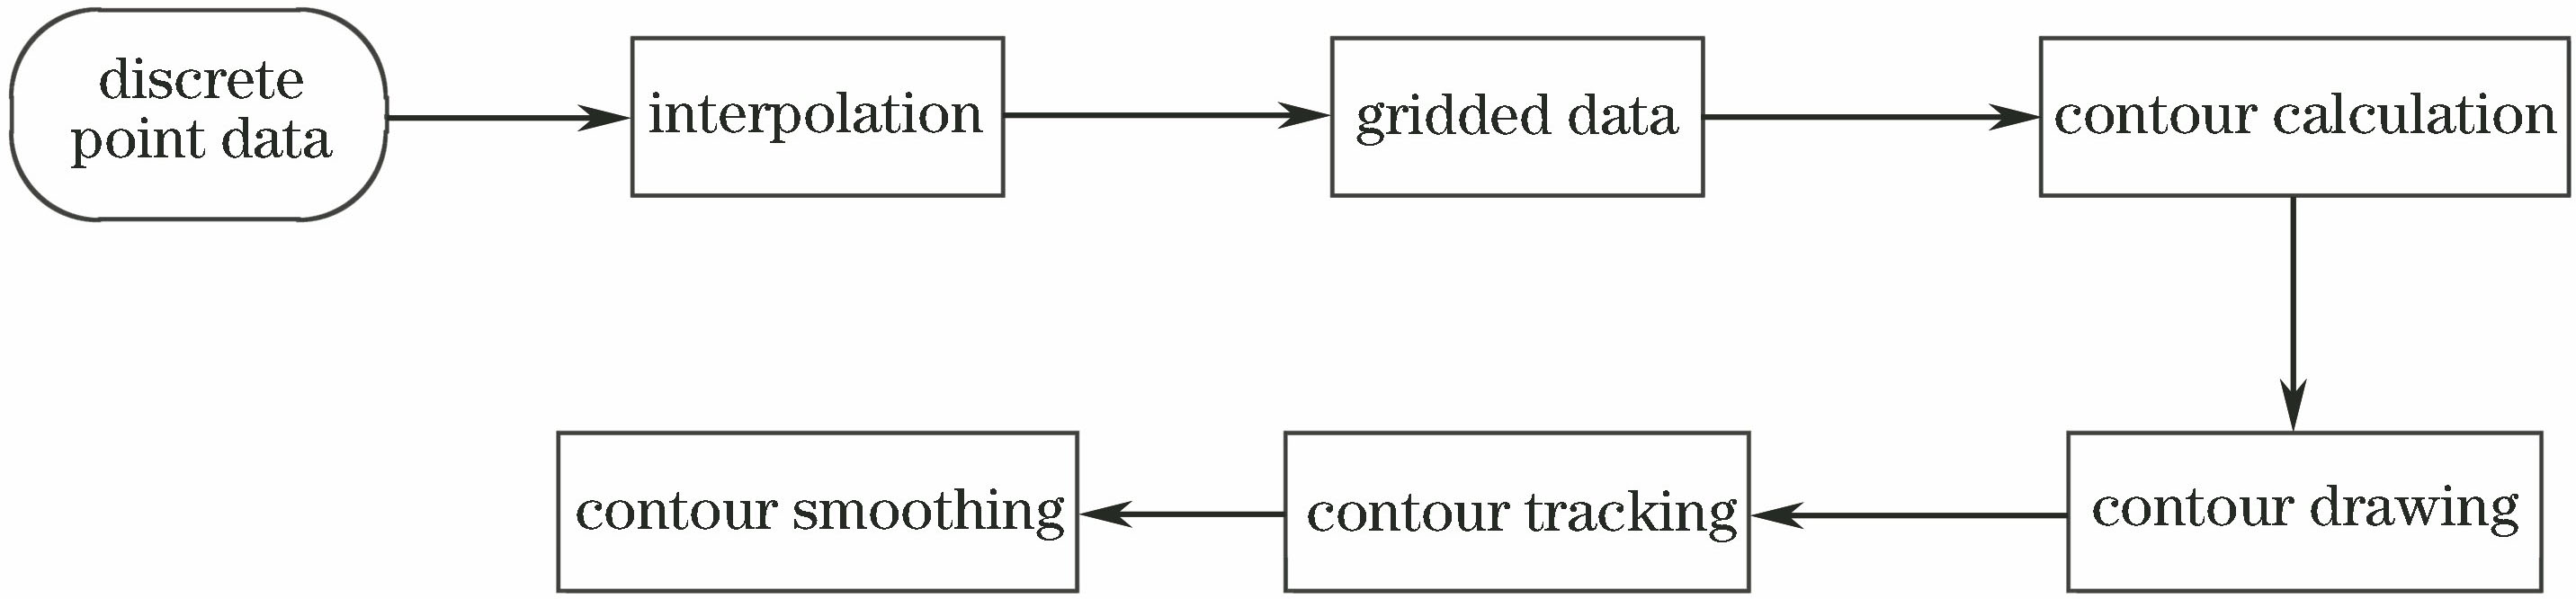 Contour generation flow chart